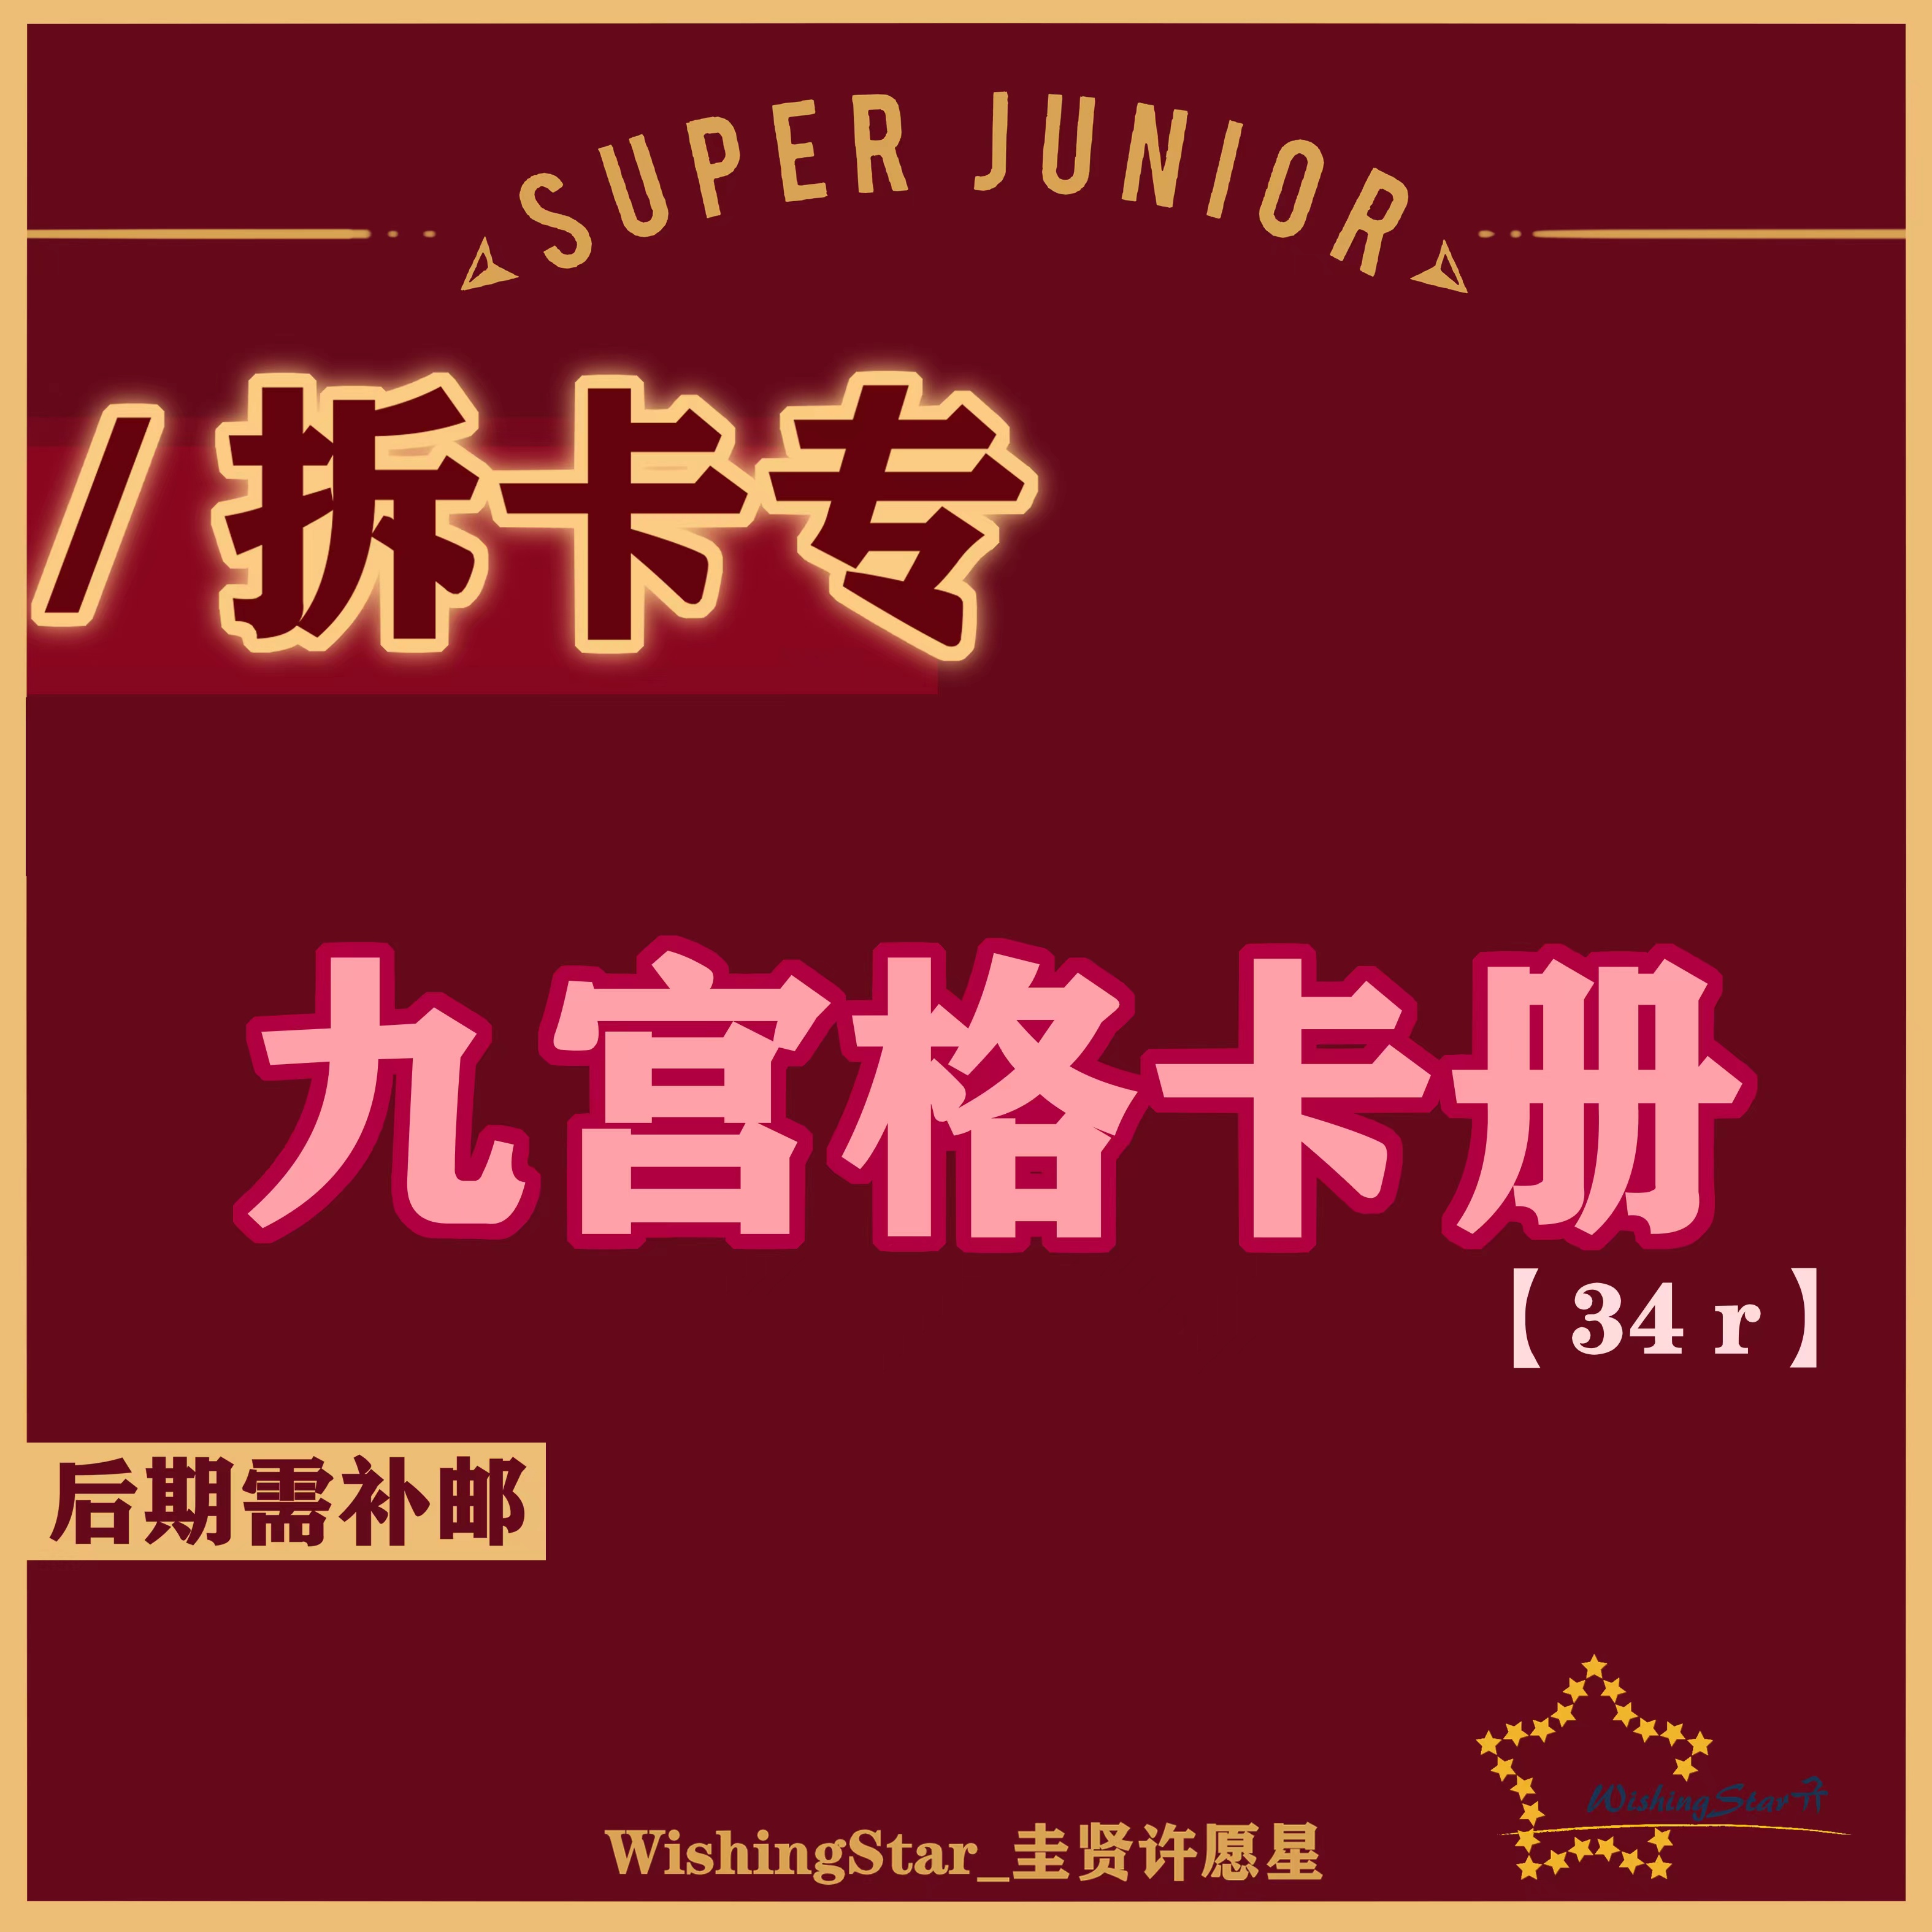 [拆卡专 九宫格卡册] SUPER JUNIOR - The 11th Album Vol.1 [The Road : Keep on Going]_WishingStar_圭贤许愿星